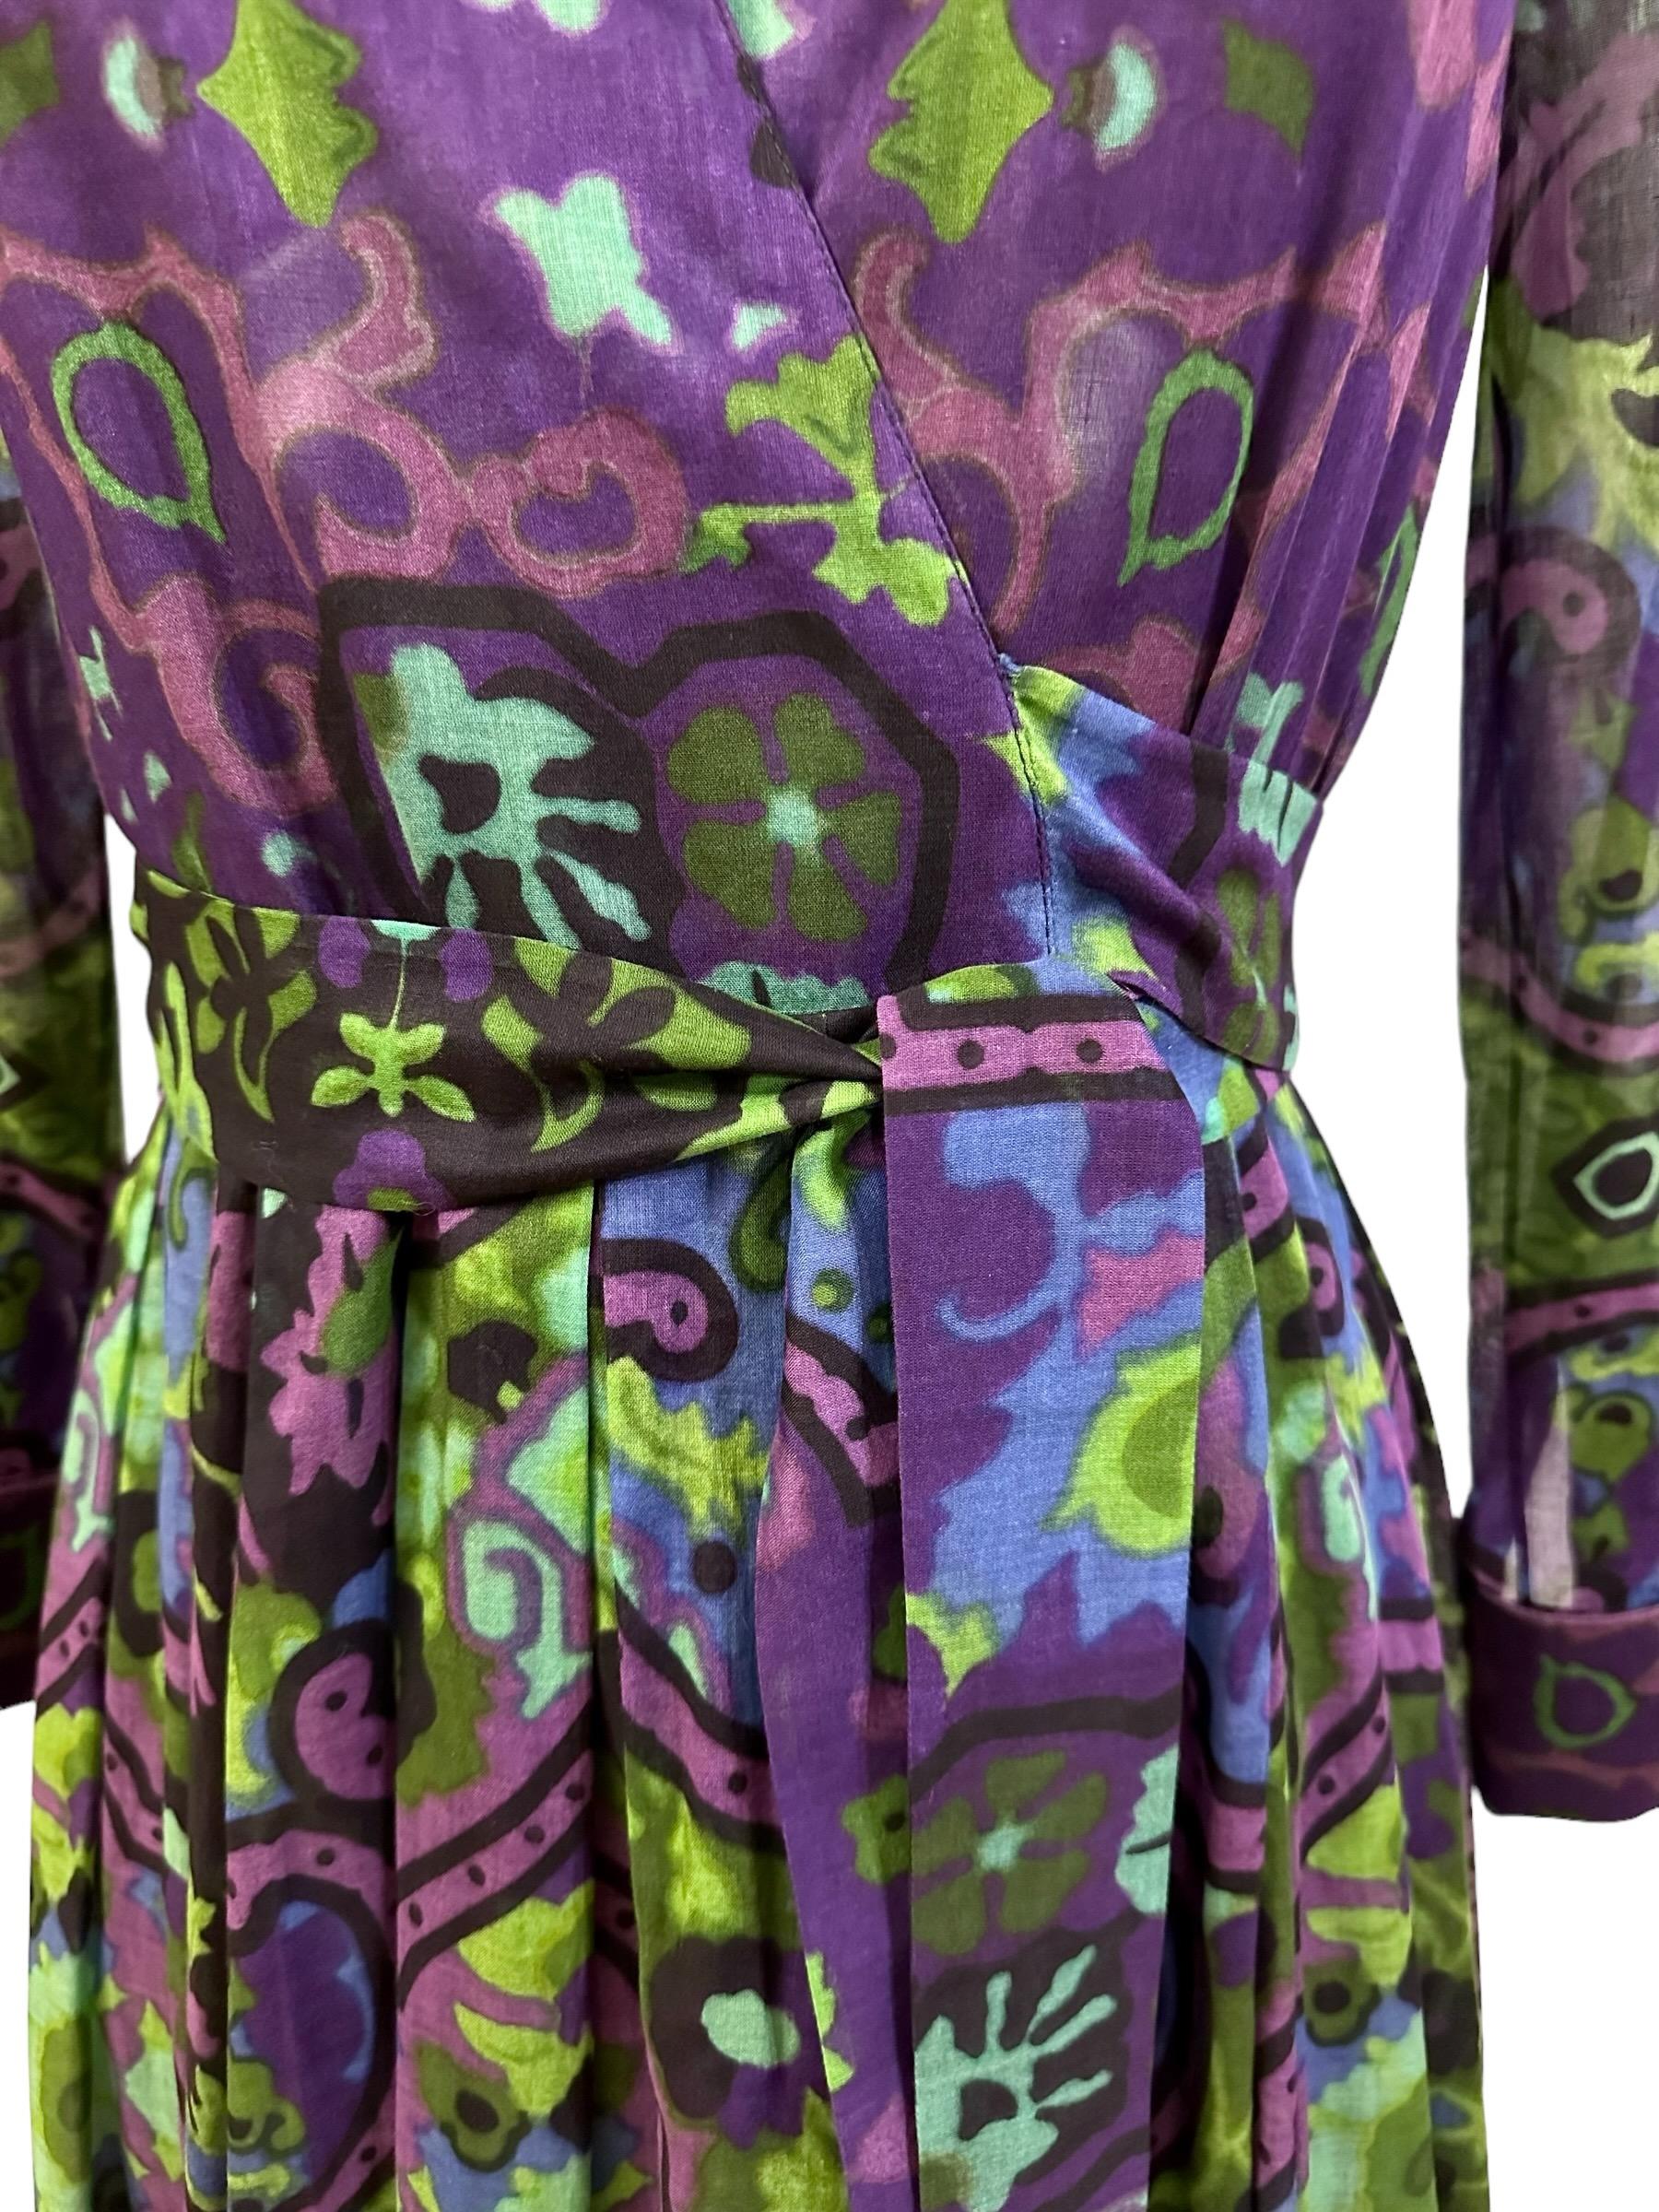 Dieses schöne gebrauchte, aber neue Christian Dior Kleid ist Teil der Dior Fall 2023 Kollektion, die im Gate of India in Mumbai gezeigt wurde.
Es ist in einem schönen leichten Baumwollschleier in einer subbtle Mischung aus grünen, lila und schwarzen